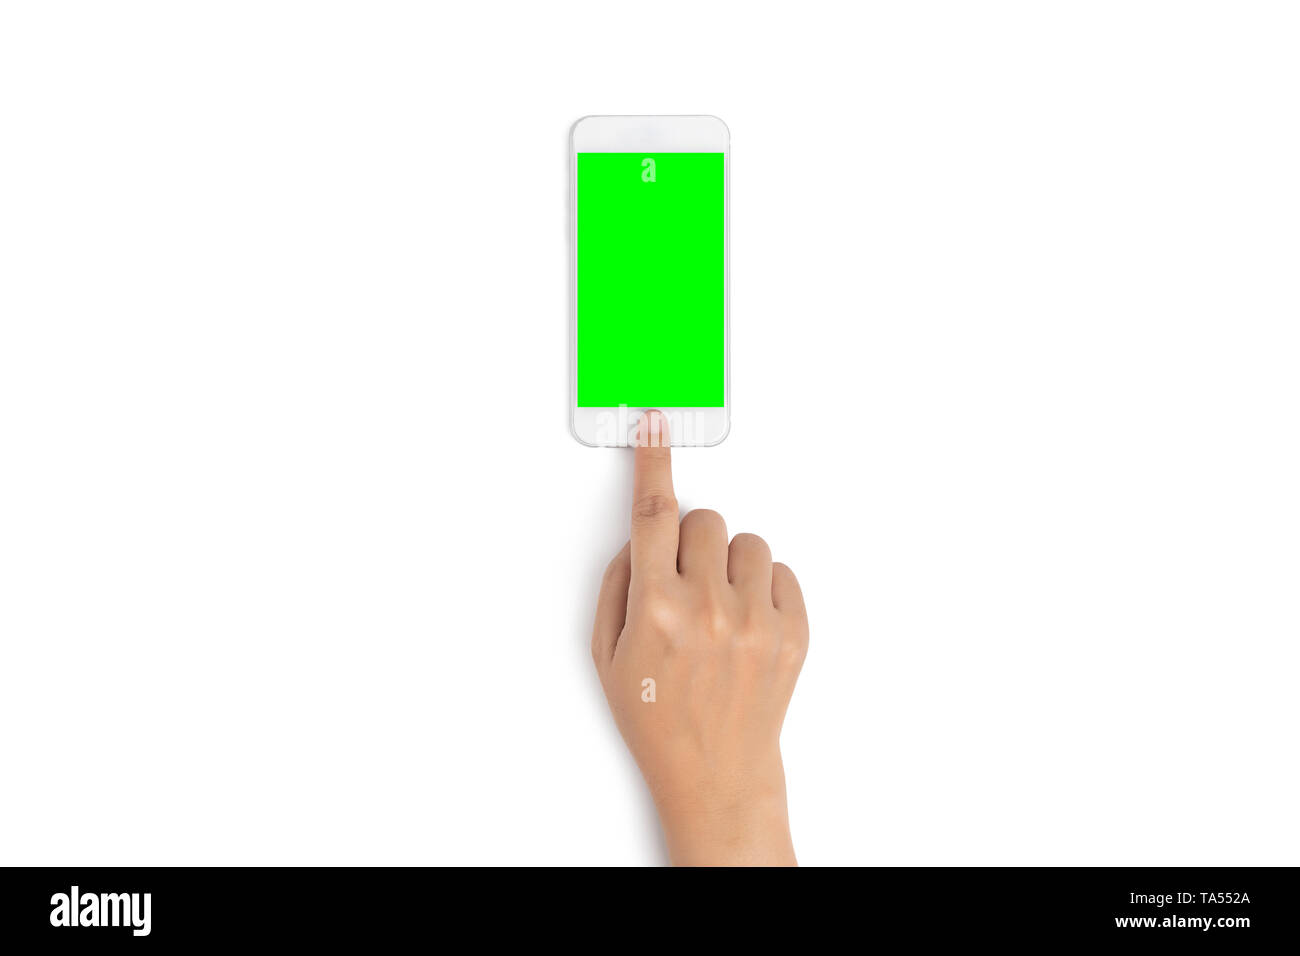 Frau Hand mit dem Finger berühren Sie auf dem Mobiltelefon die Taste mit den leeren Bildschirm Grün von oben sehen, auf weißem Hintergrund mit Freistellungspfad isoliert Stockfoto